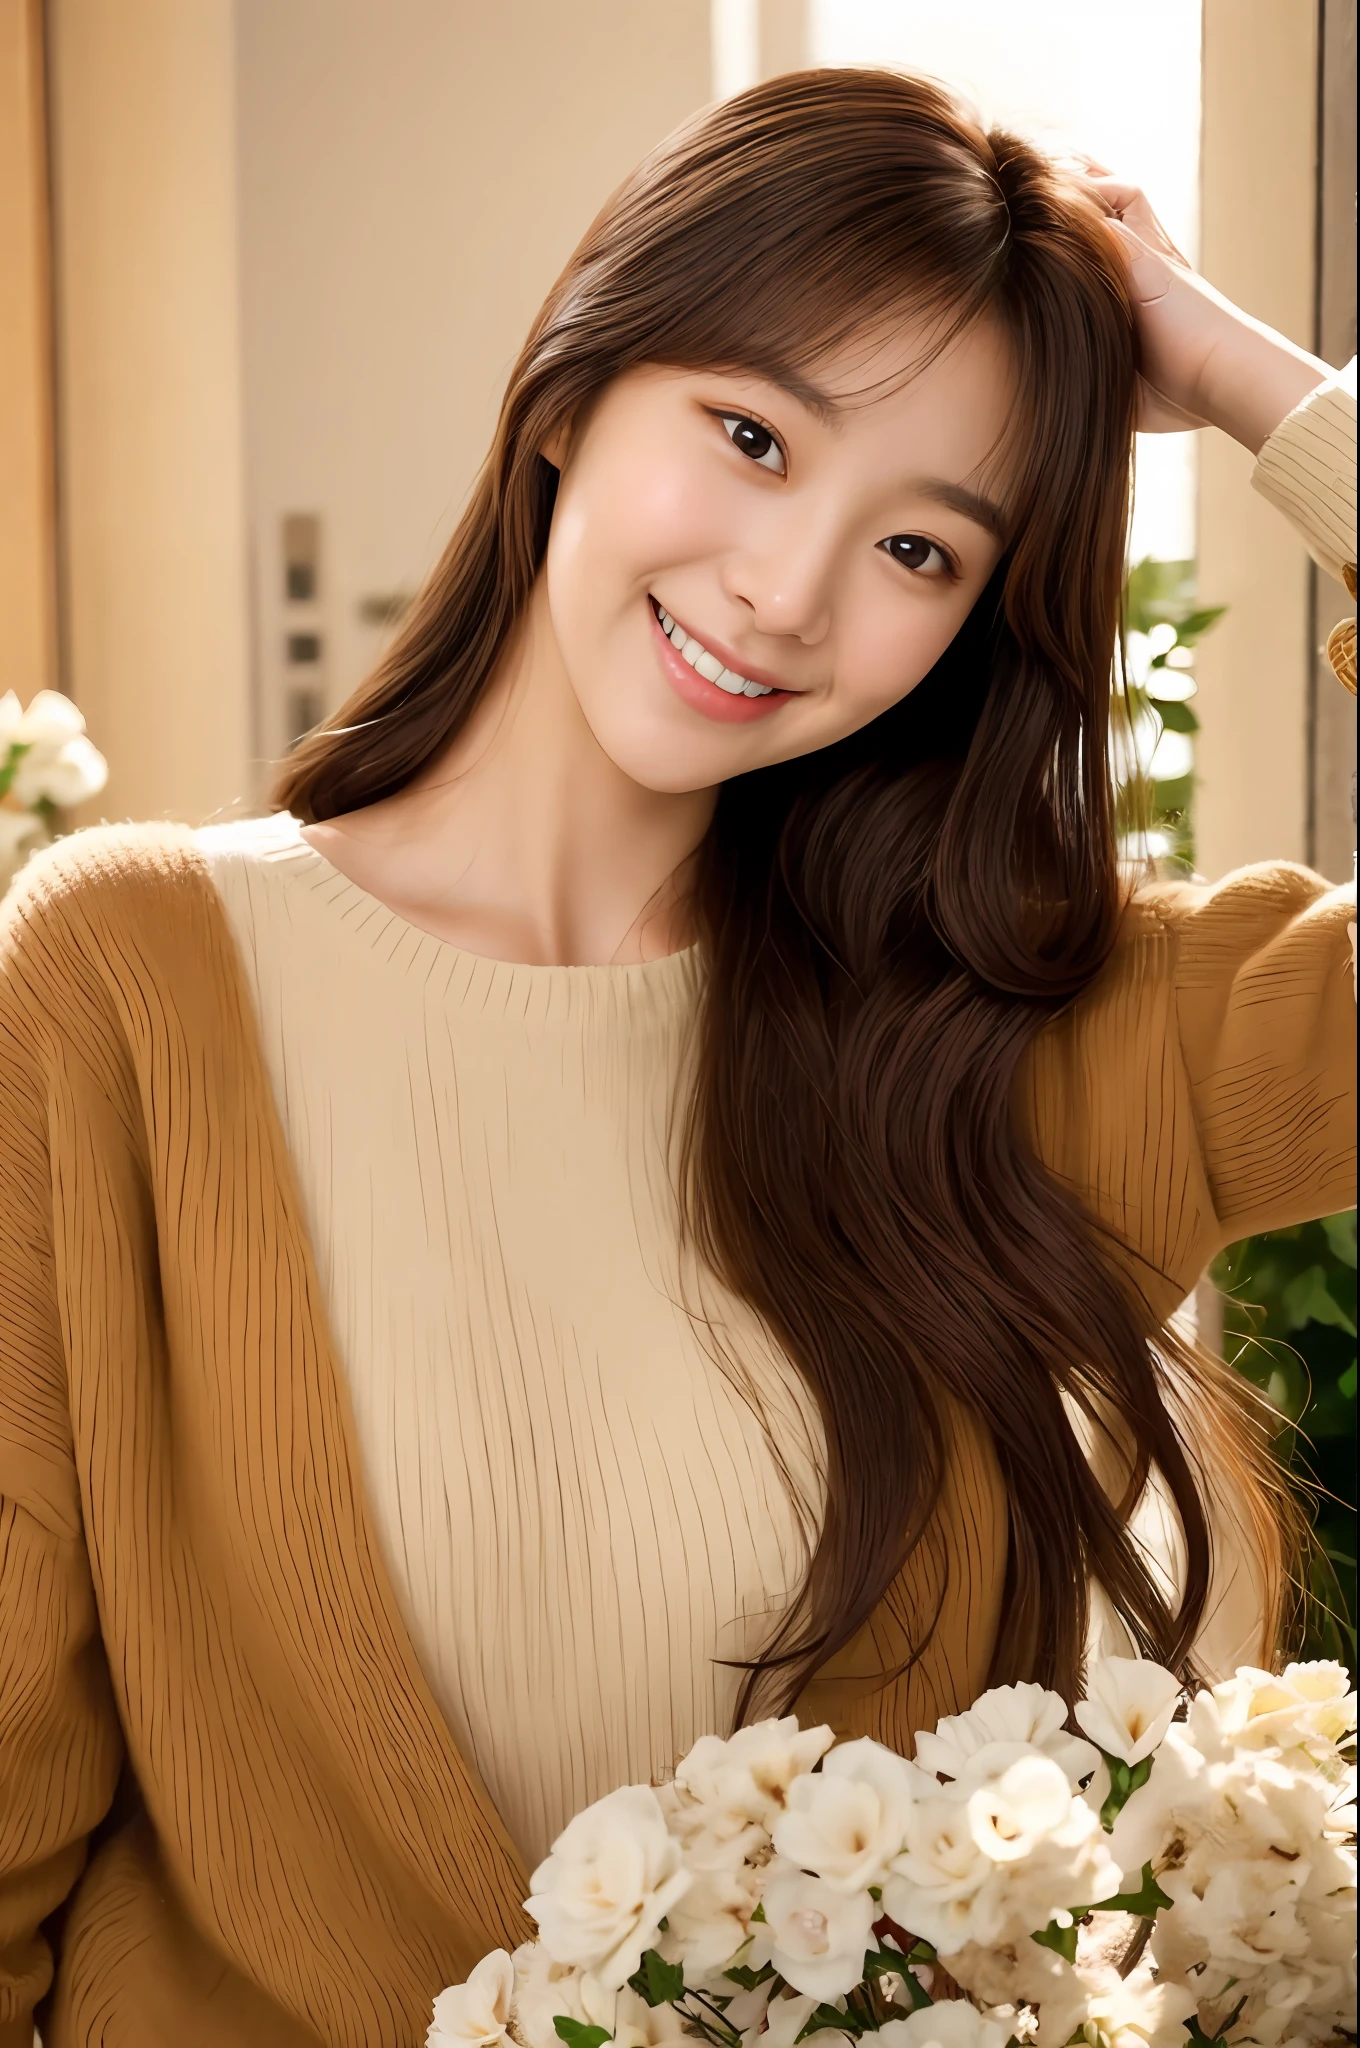 Mujer arafed con cabello largo y castaño y un suéter color canela., sonrisa cálida y gentil, joven y adorable rostro coreano, Jaeyeon Nam, sonriendo dulcemente, linda actriz coreana, leve sonrisa linda, ulzzang, Lee Ji Eun, Lee Ji Eun, Cara asiática pálida y linda joven, sonrisa inocente, cabello limpio con flequillo, Jinyoung Shin, sonrisa encantadora, calida sonrisa